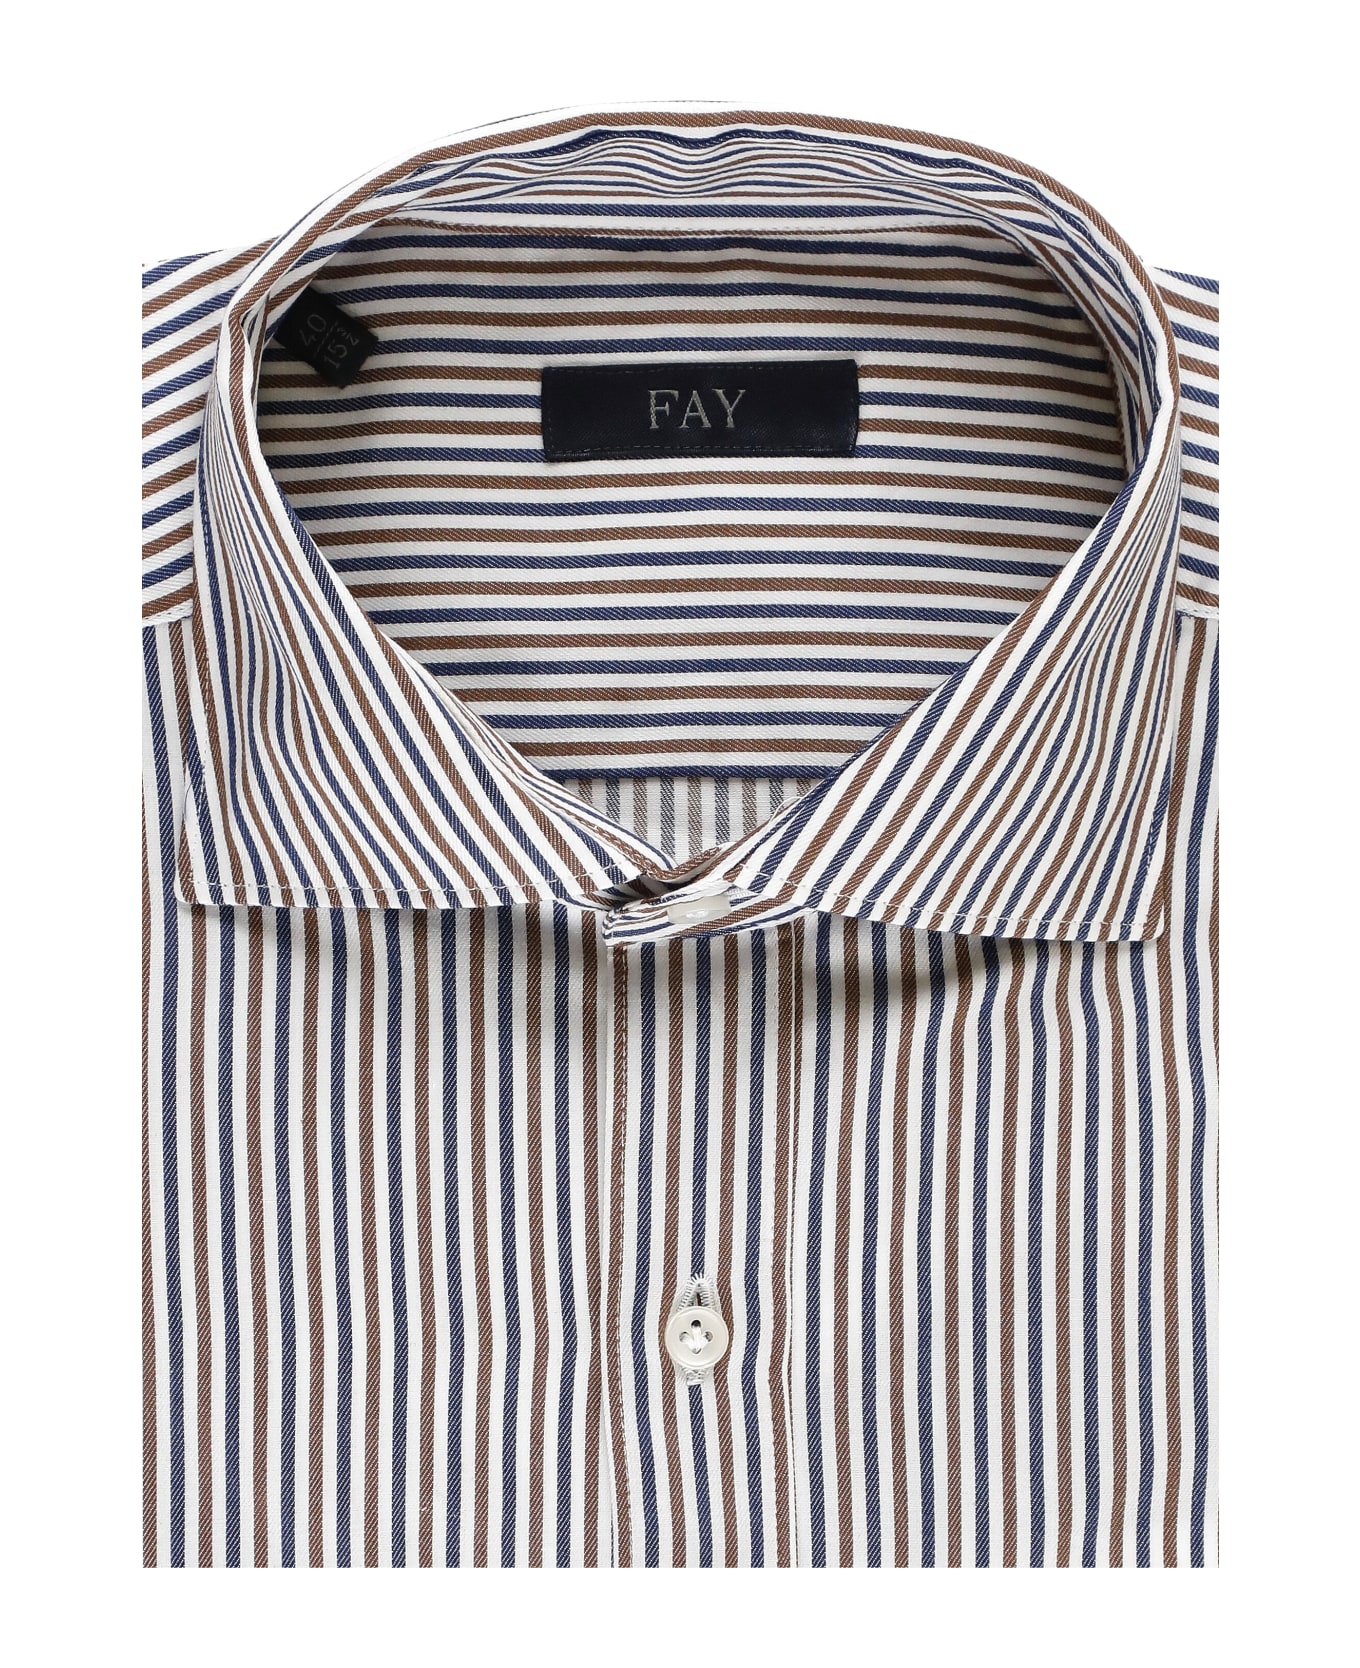 Fay Cotton Striped Shirt - MultiColour